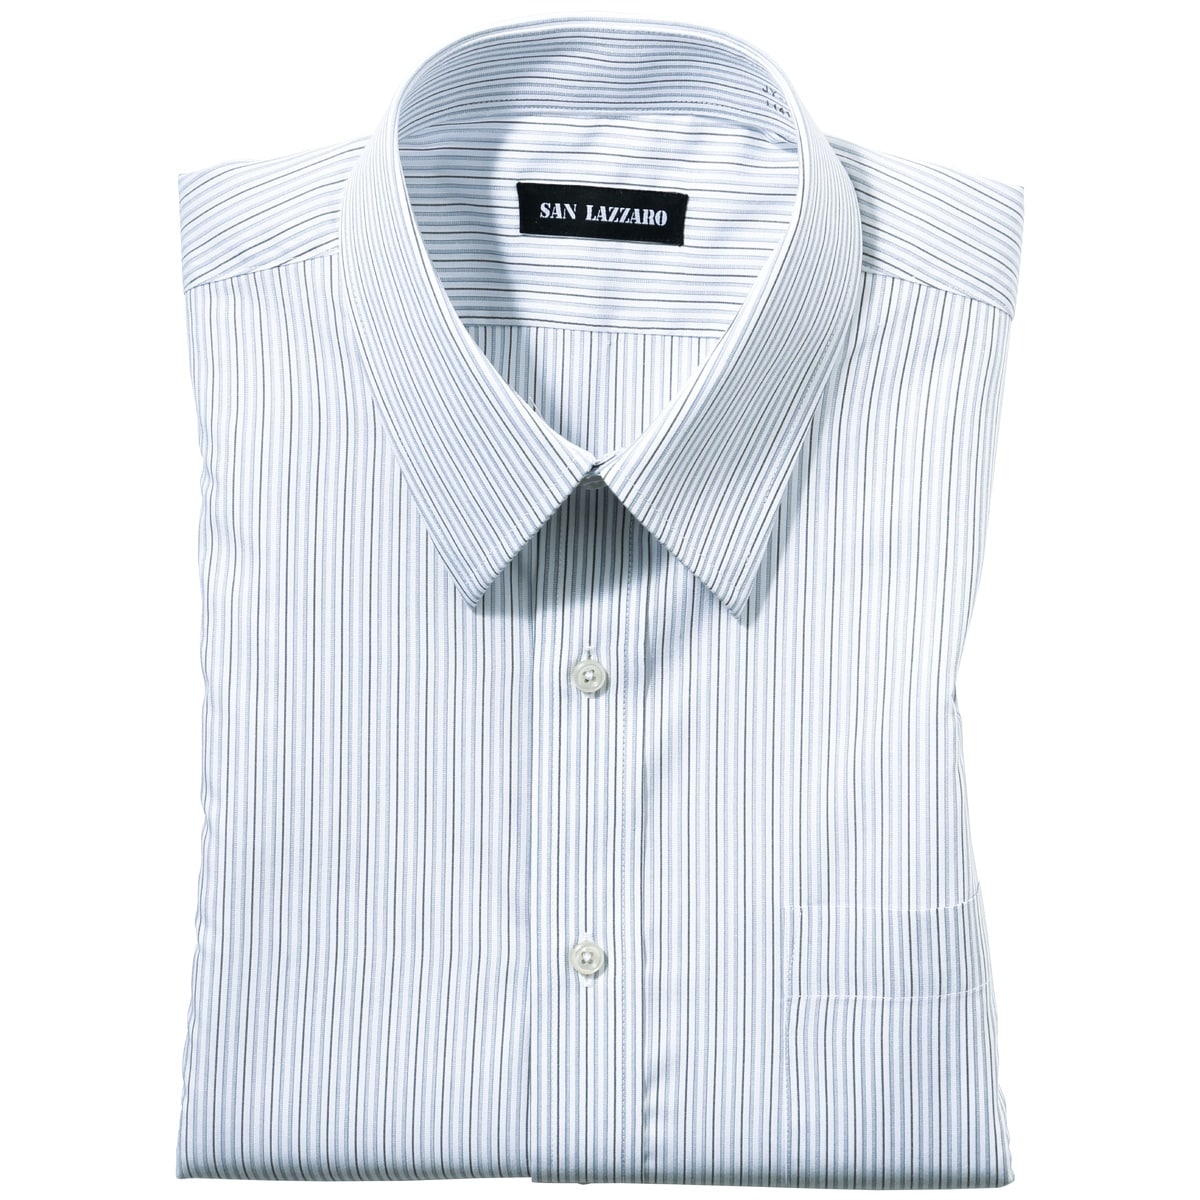 形態安定Yシャツ(長袖)/出張・洗い替え対策 - ファッション通販なら